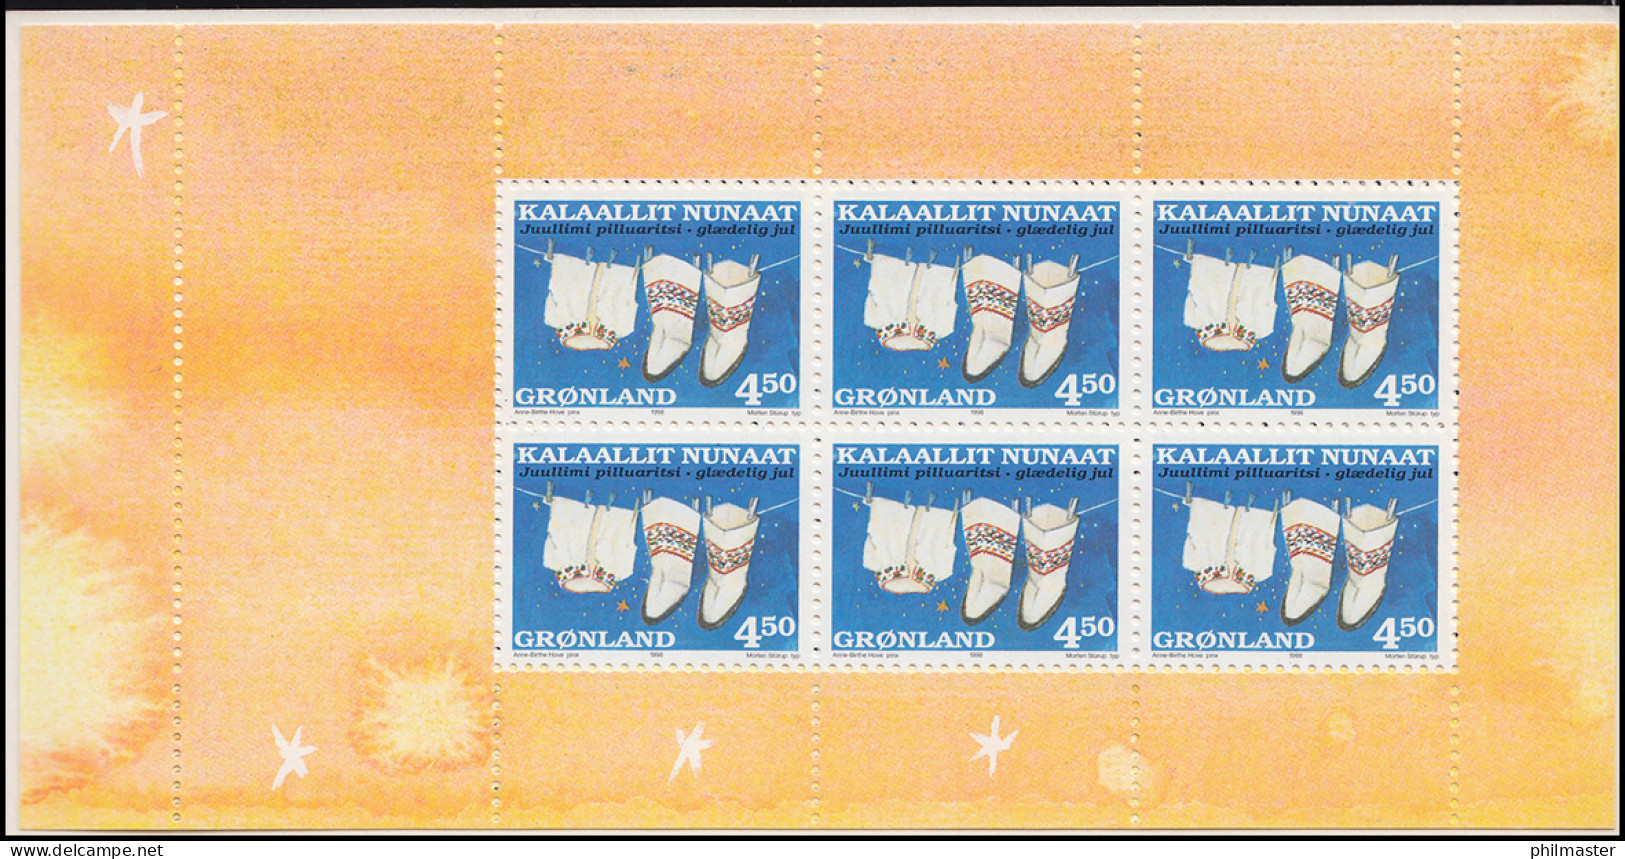 Grönland Markenheftchen 329-330 Weihnachten 1998, ** Postfrisch - Markenheftchen